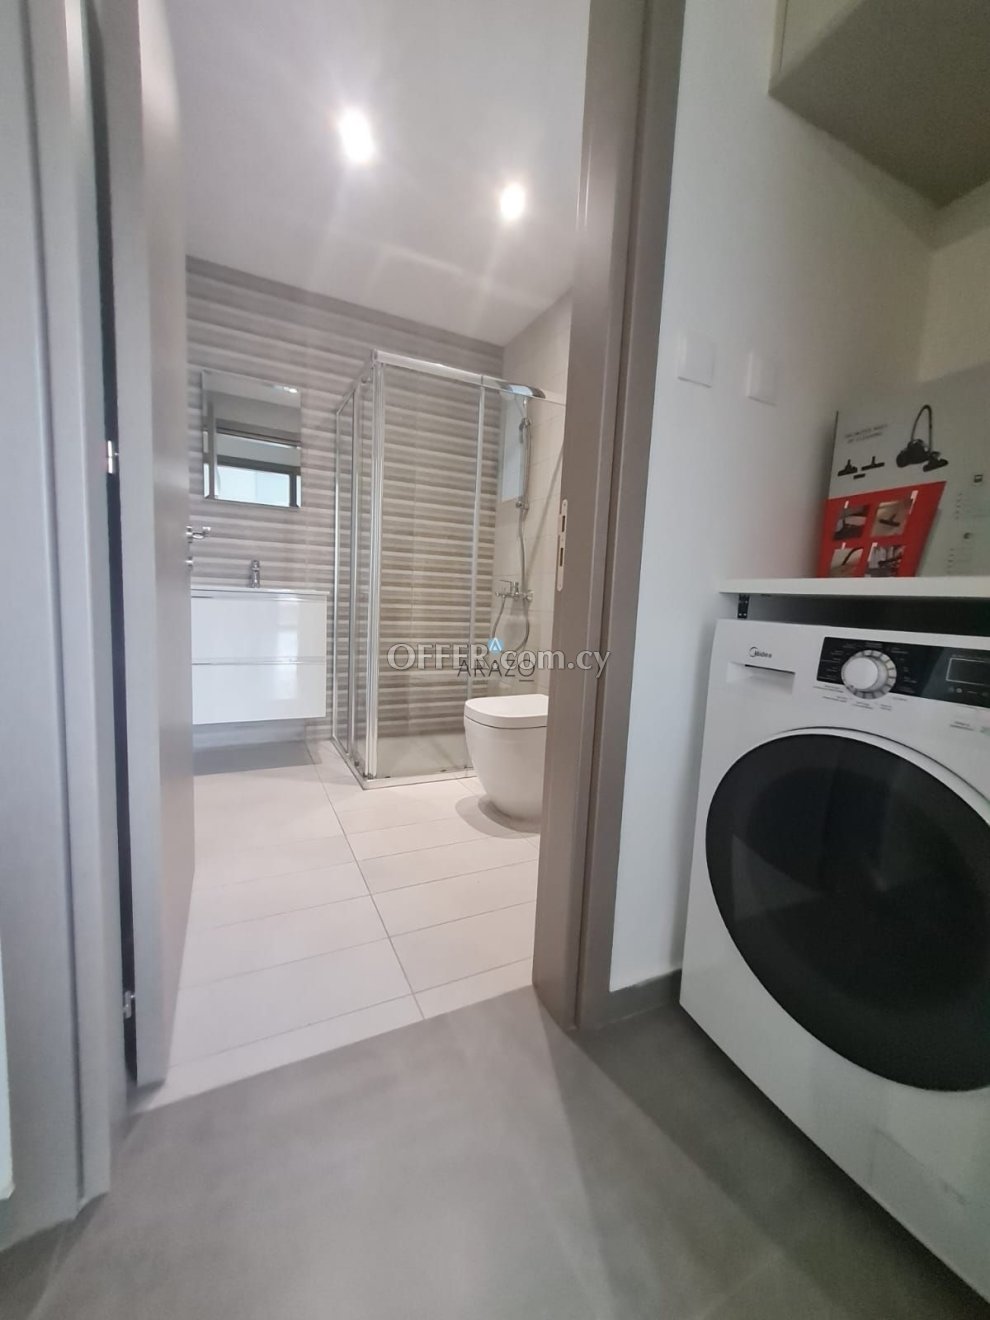 1 Bed Apartment for Rent in Prodromos, Larnaca - 6